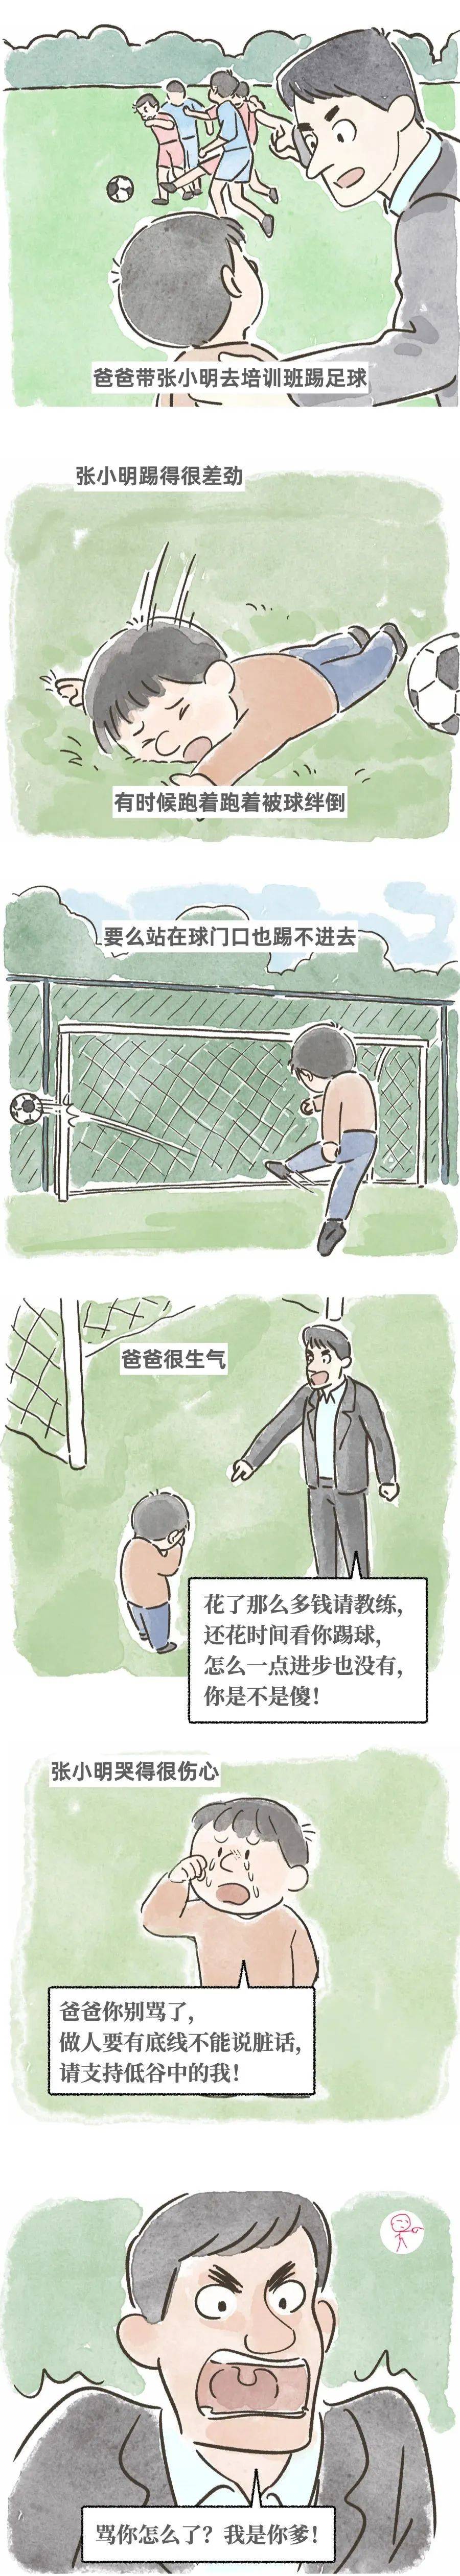 嘲讽中国足球该不该有底线？_中国足球真正需要的是什么_嘲讽_底线